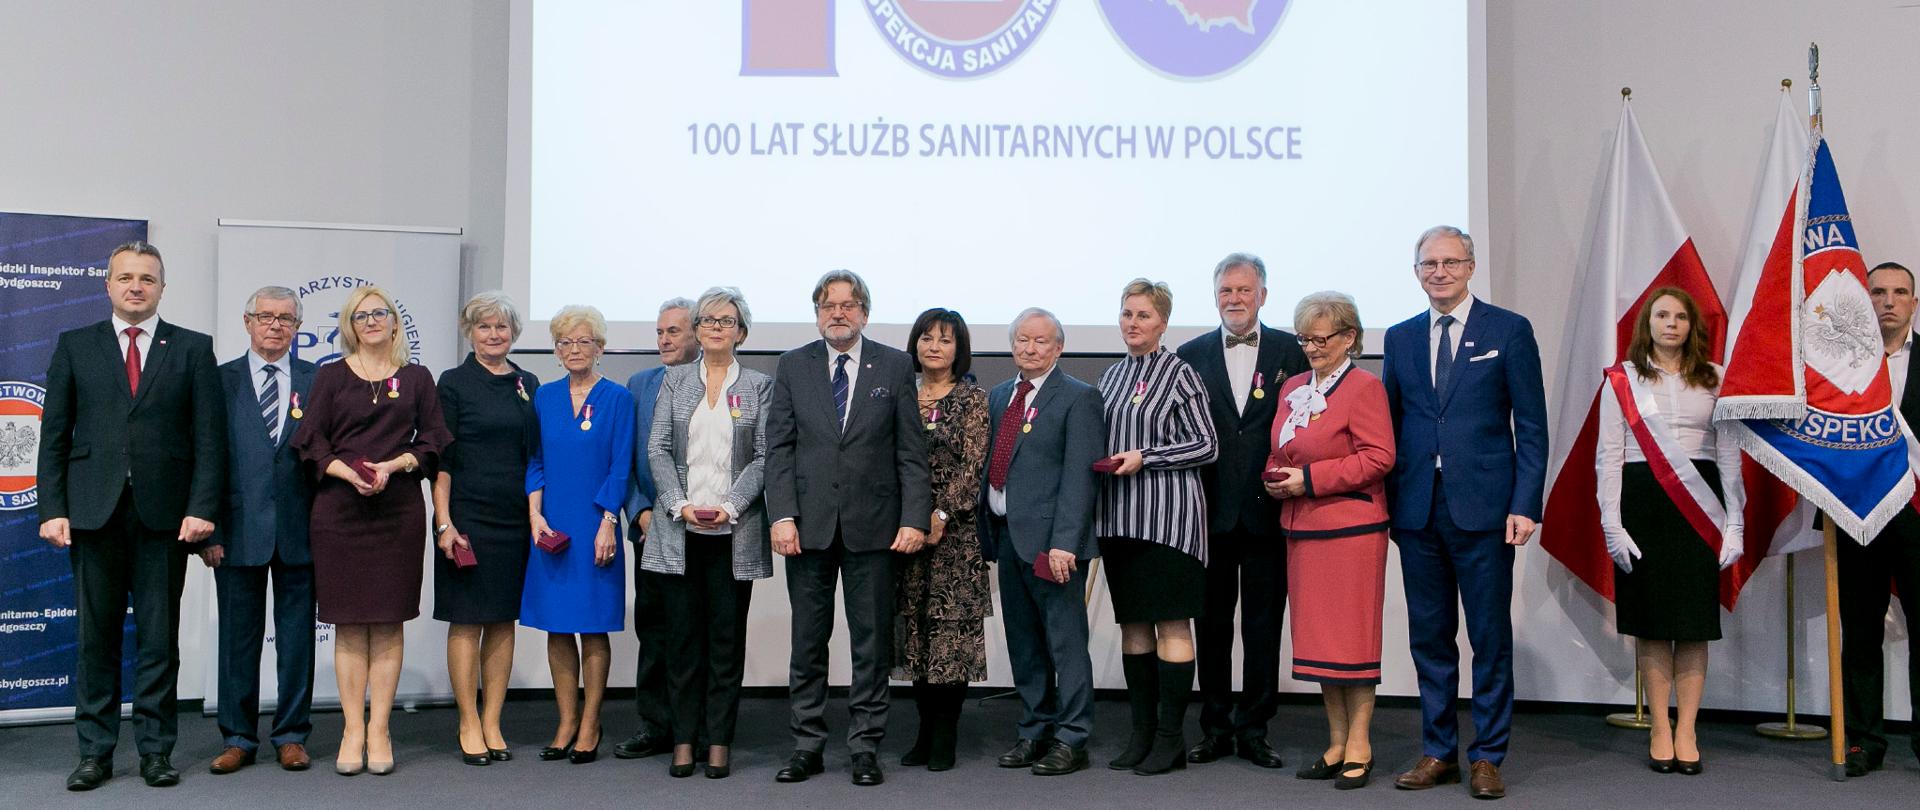 Obchody 100-lecia Służb Sanitarnych w Polsce